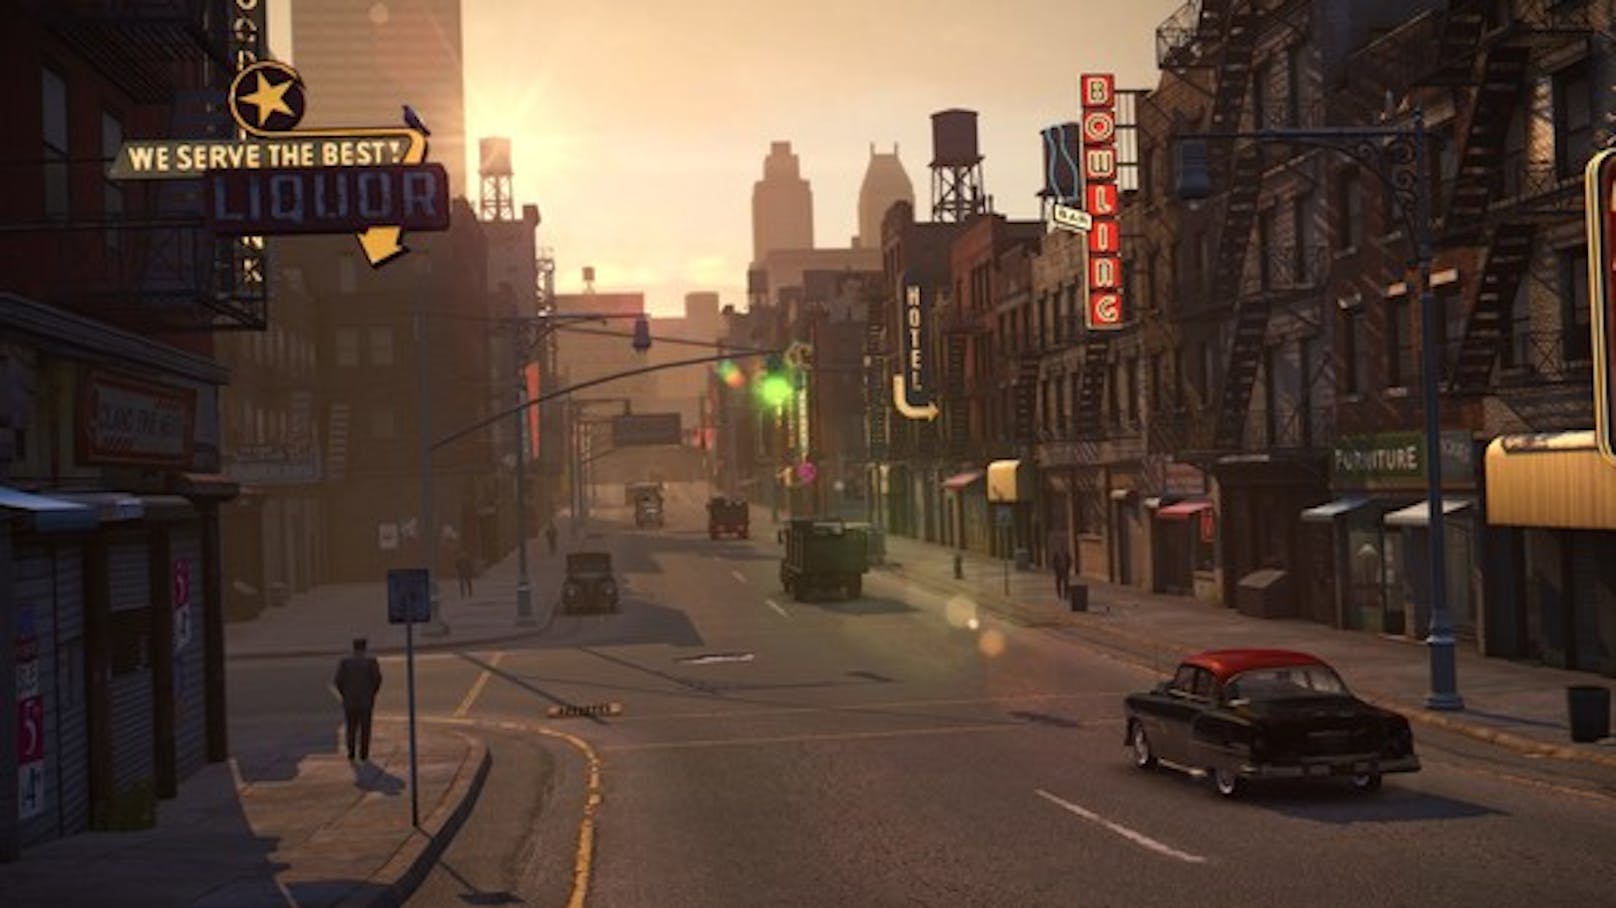 Sind in anderen Games weitläufige Areale zwar schön anzusehen aber nur Dekoration, beschränkt sich "Mafia II" auf einen engen Handlungsspielraum ...